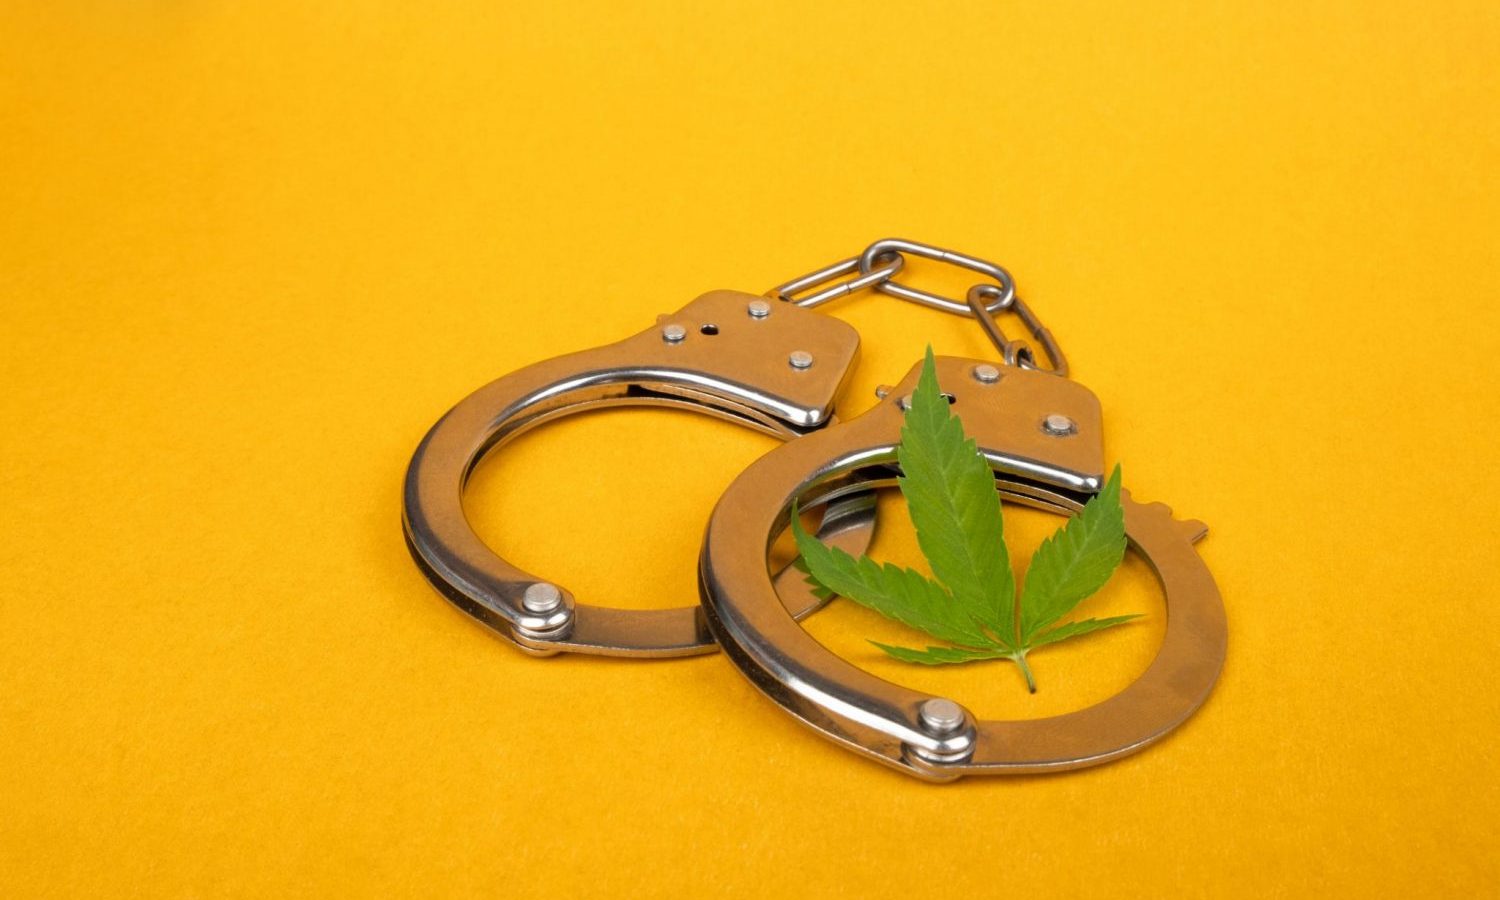 marijuana arrest